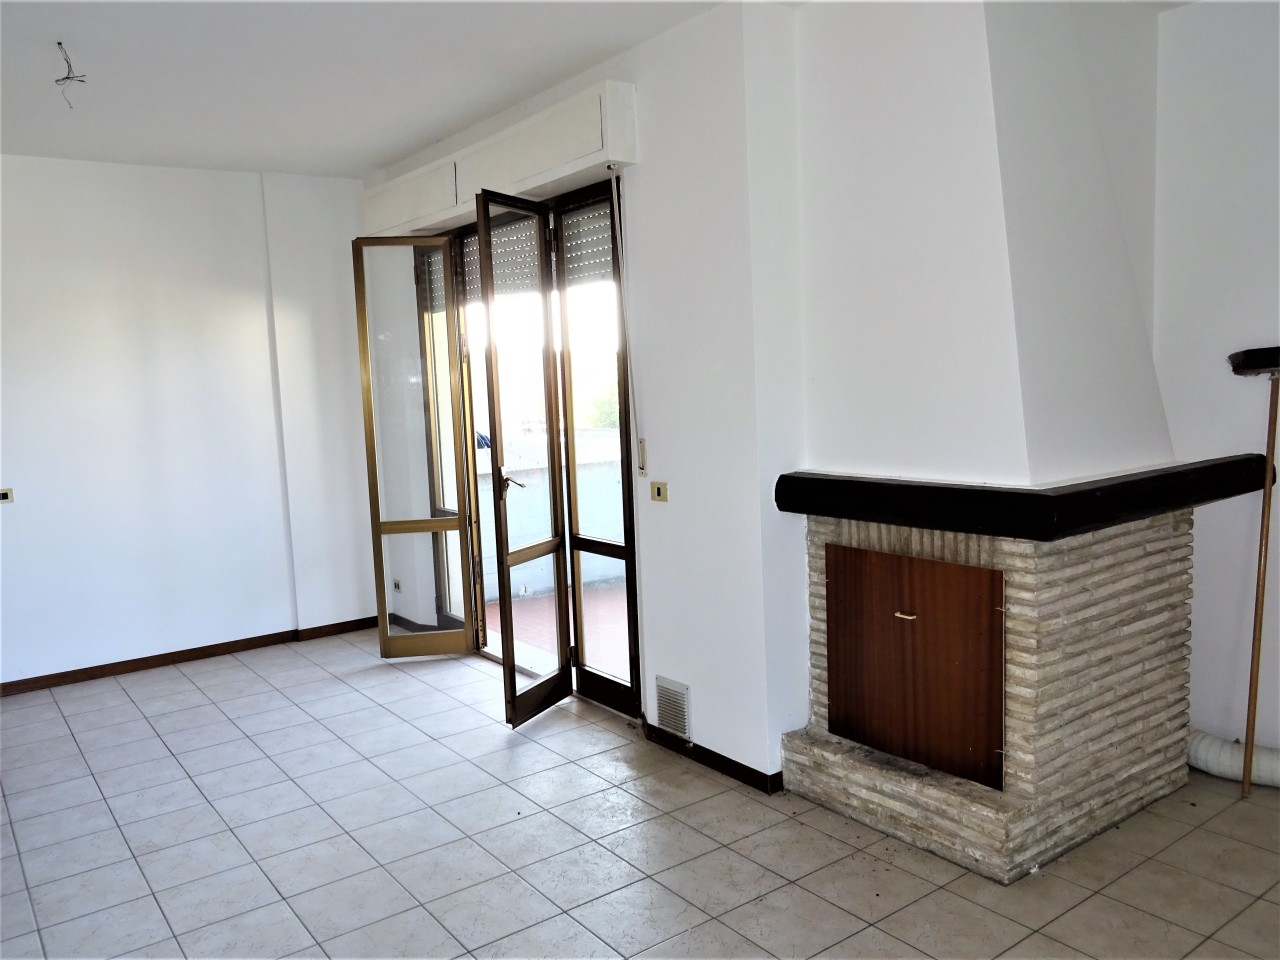 Appartamento in vendita a Montemarciano, 3 locali, prezzo € 80.000 | PortaleAgenzieImmobiliari.it